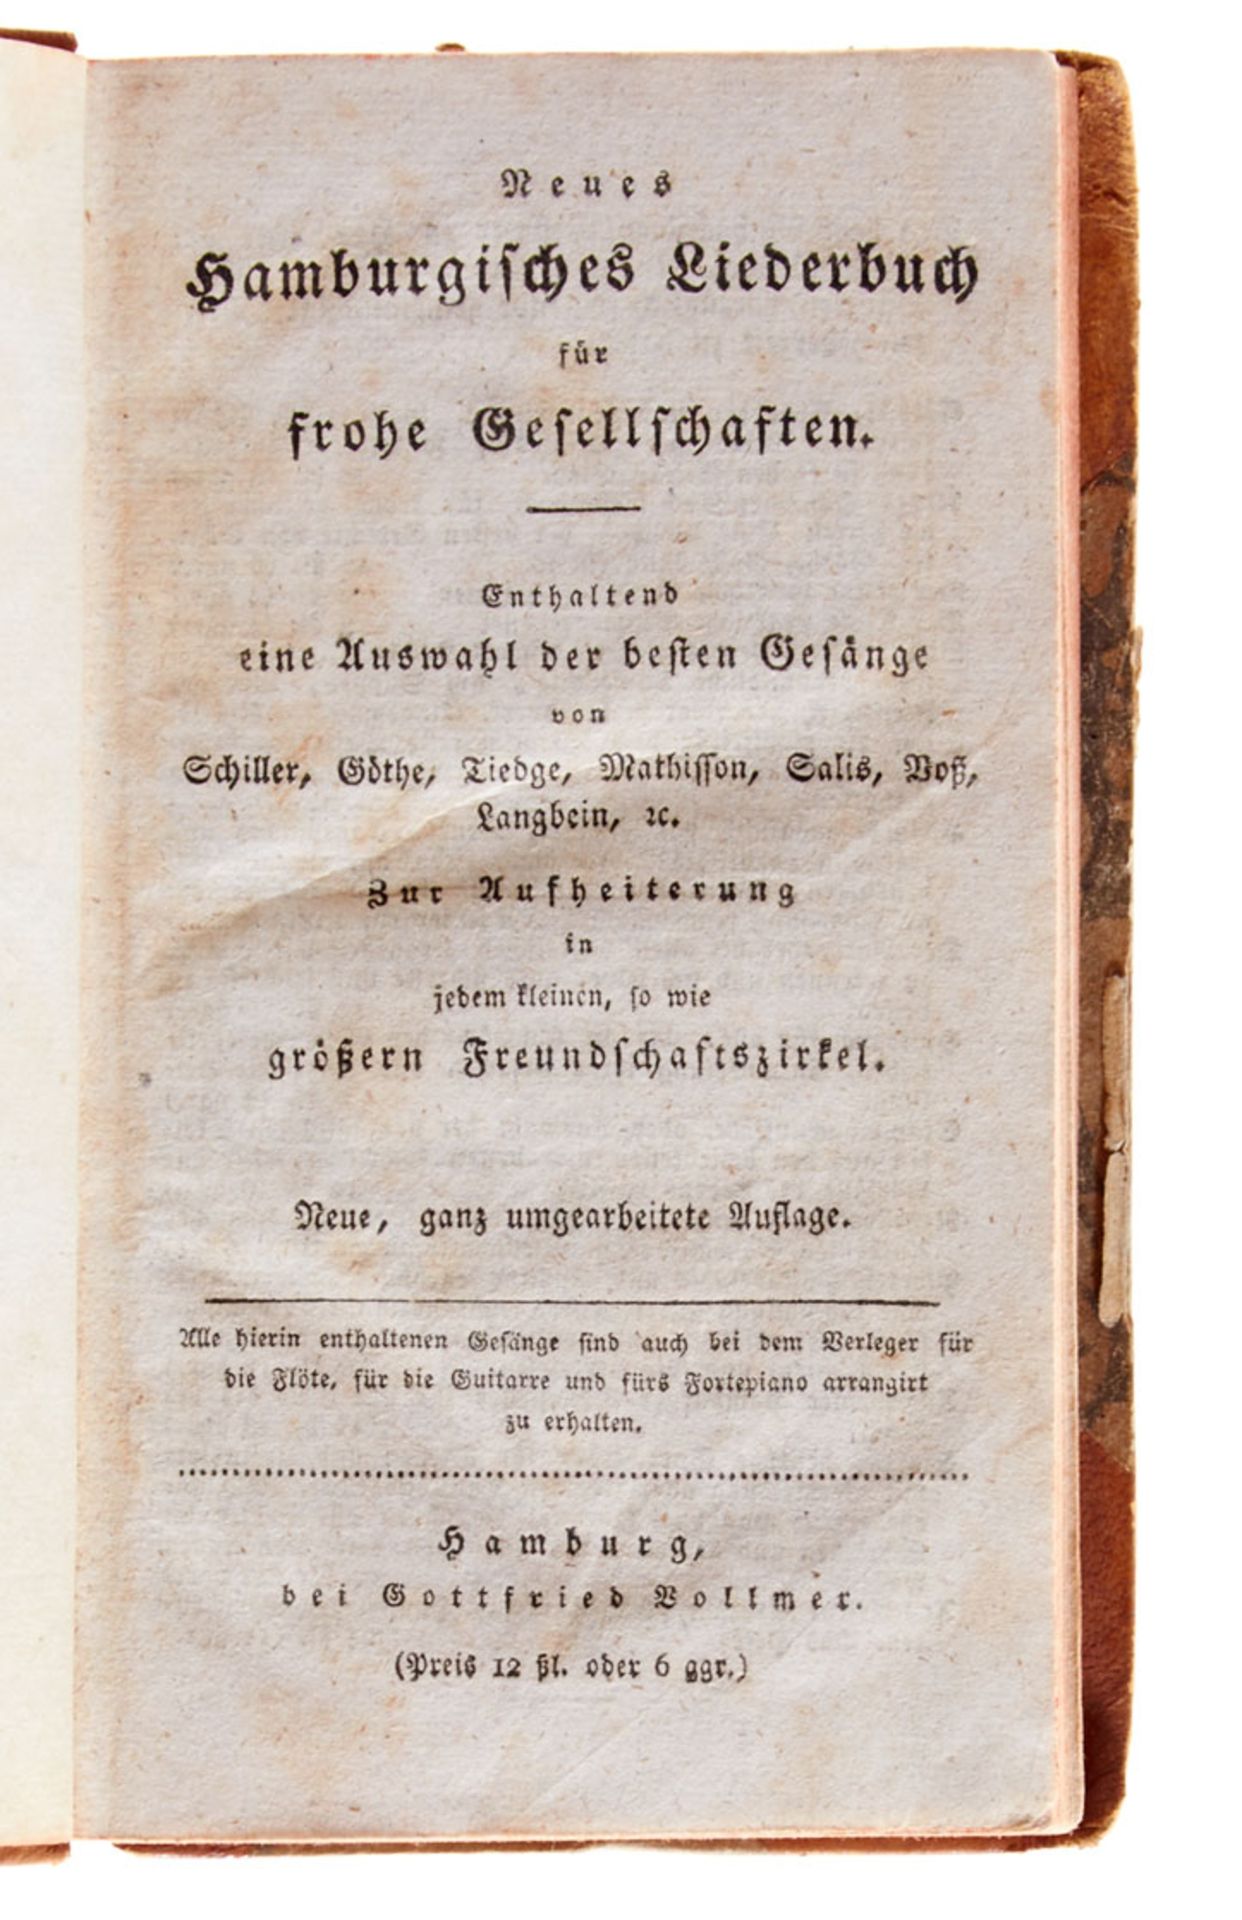 Hamburg - Neues Hamburgisches Liederbuch für frohe Gesellschaften (Tl. IV: Neuestes Hamburger Lieder - Image 2 of 3